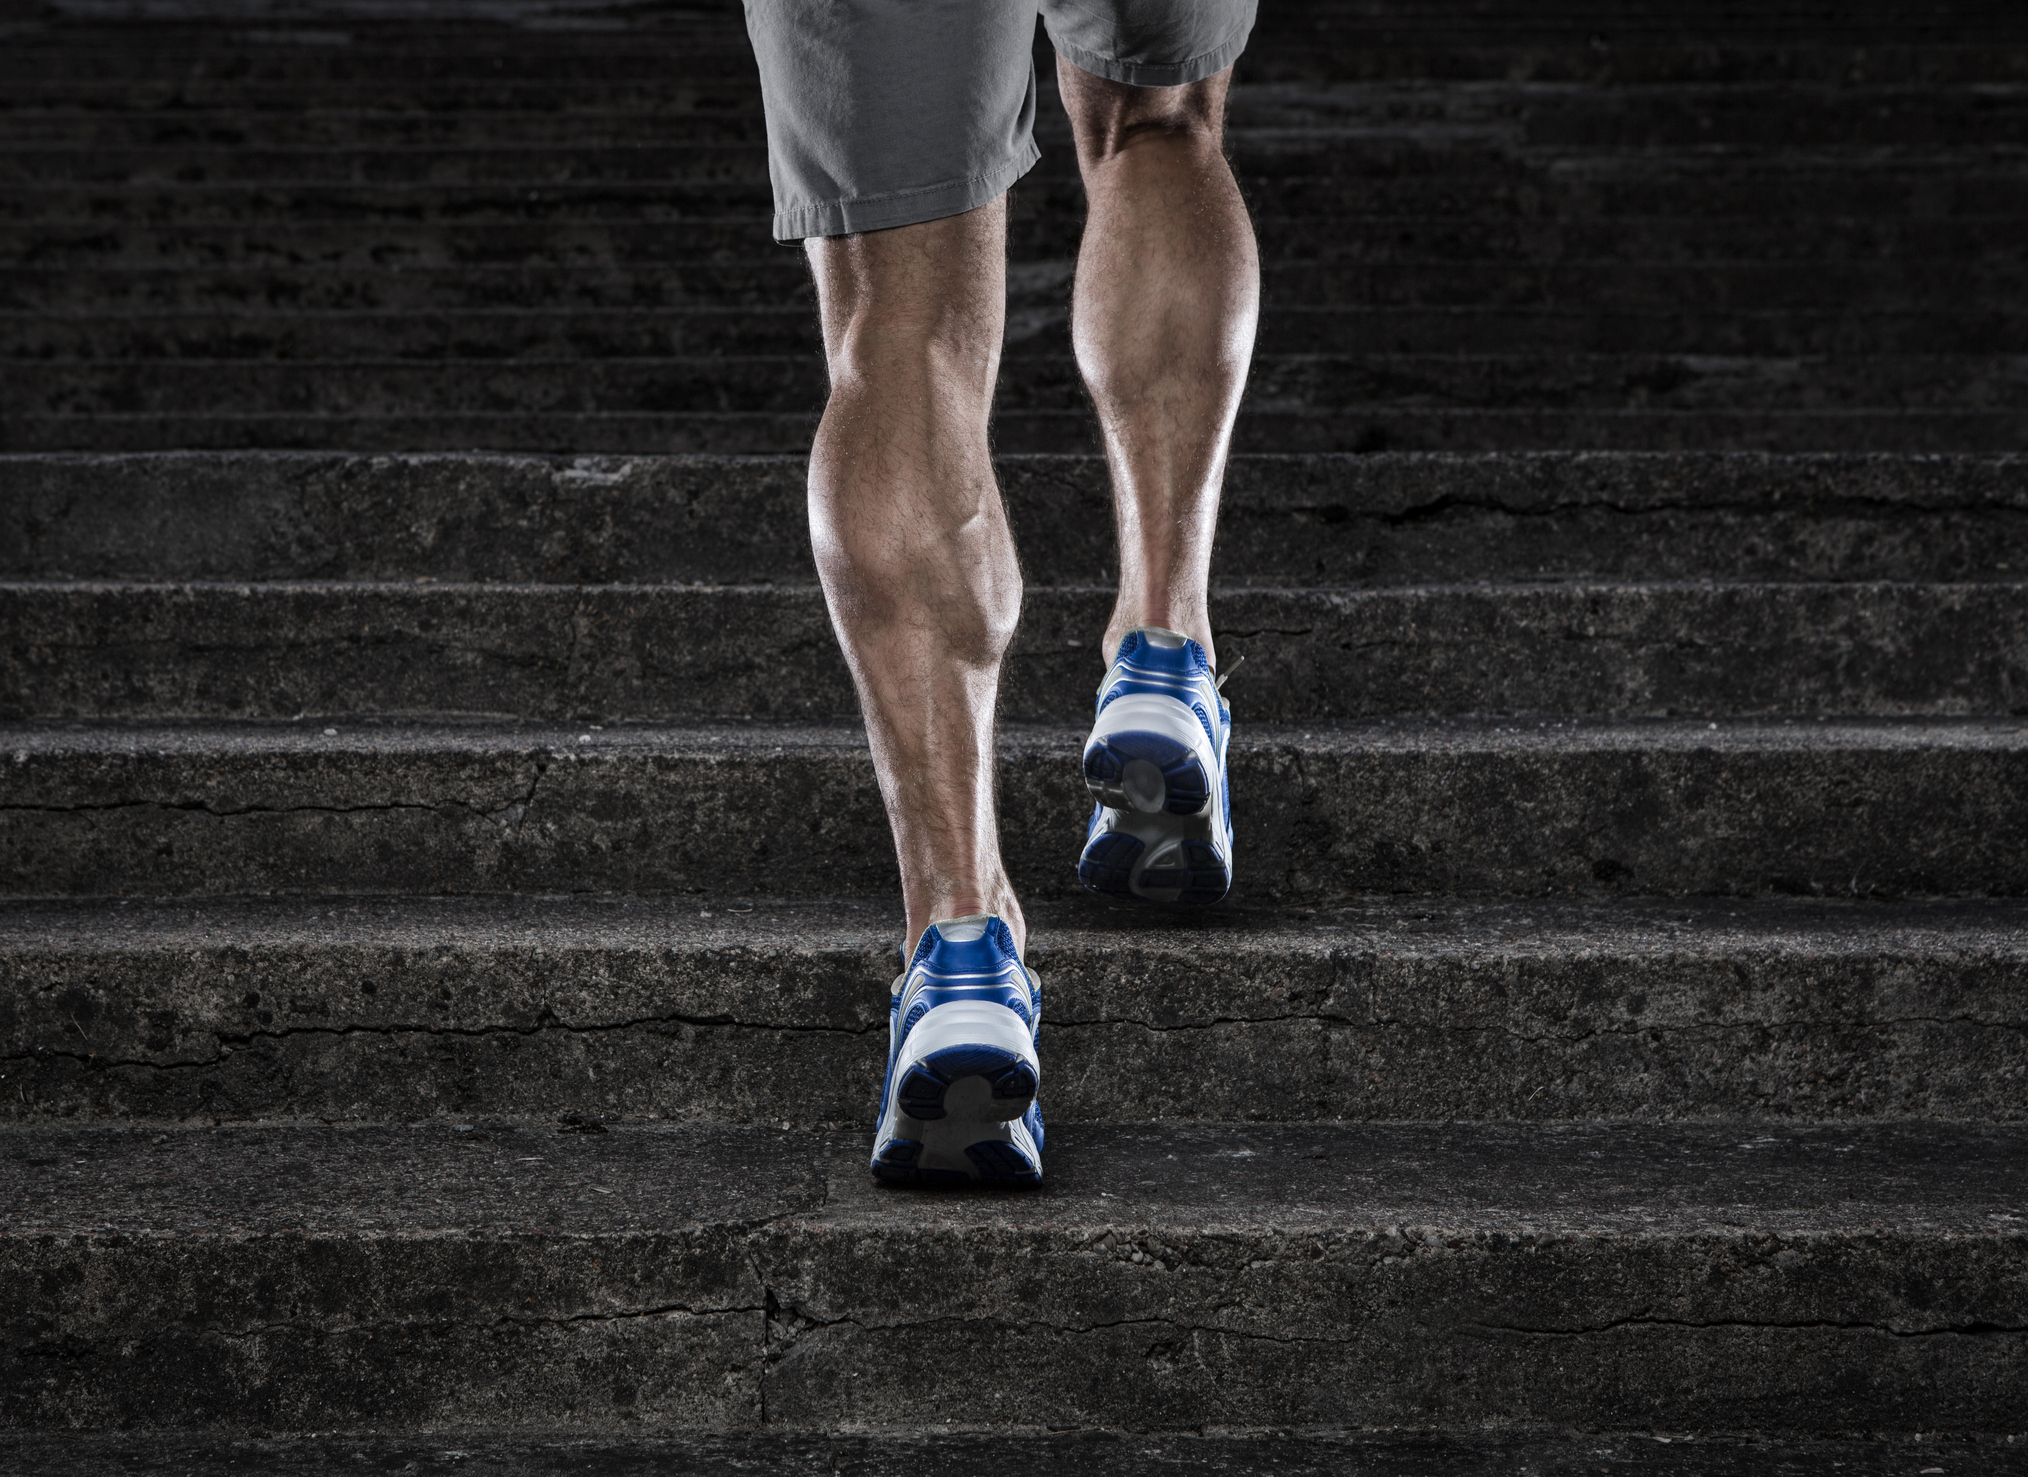 Subir escaleras puede mejorar la salud